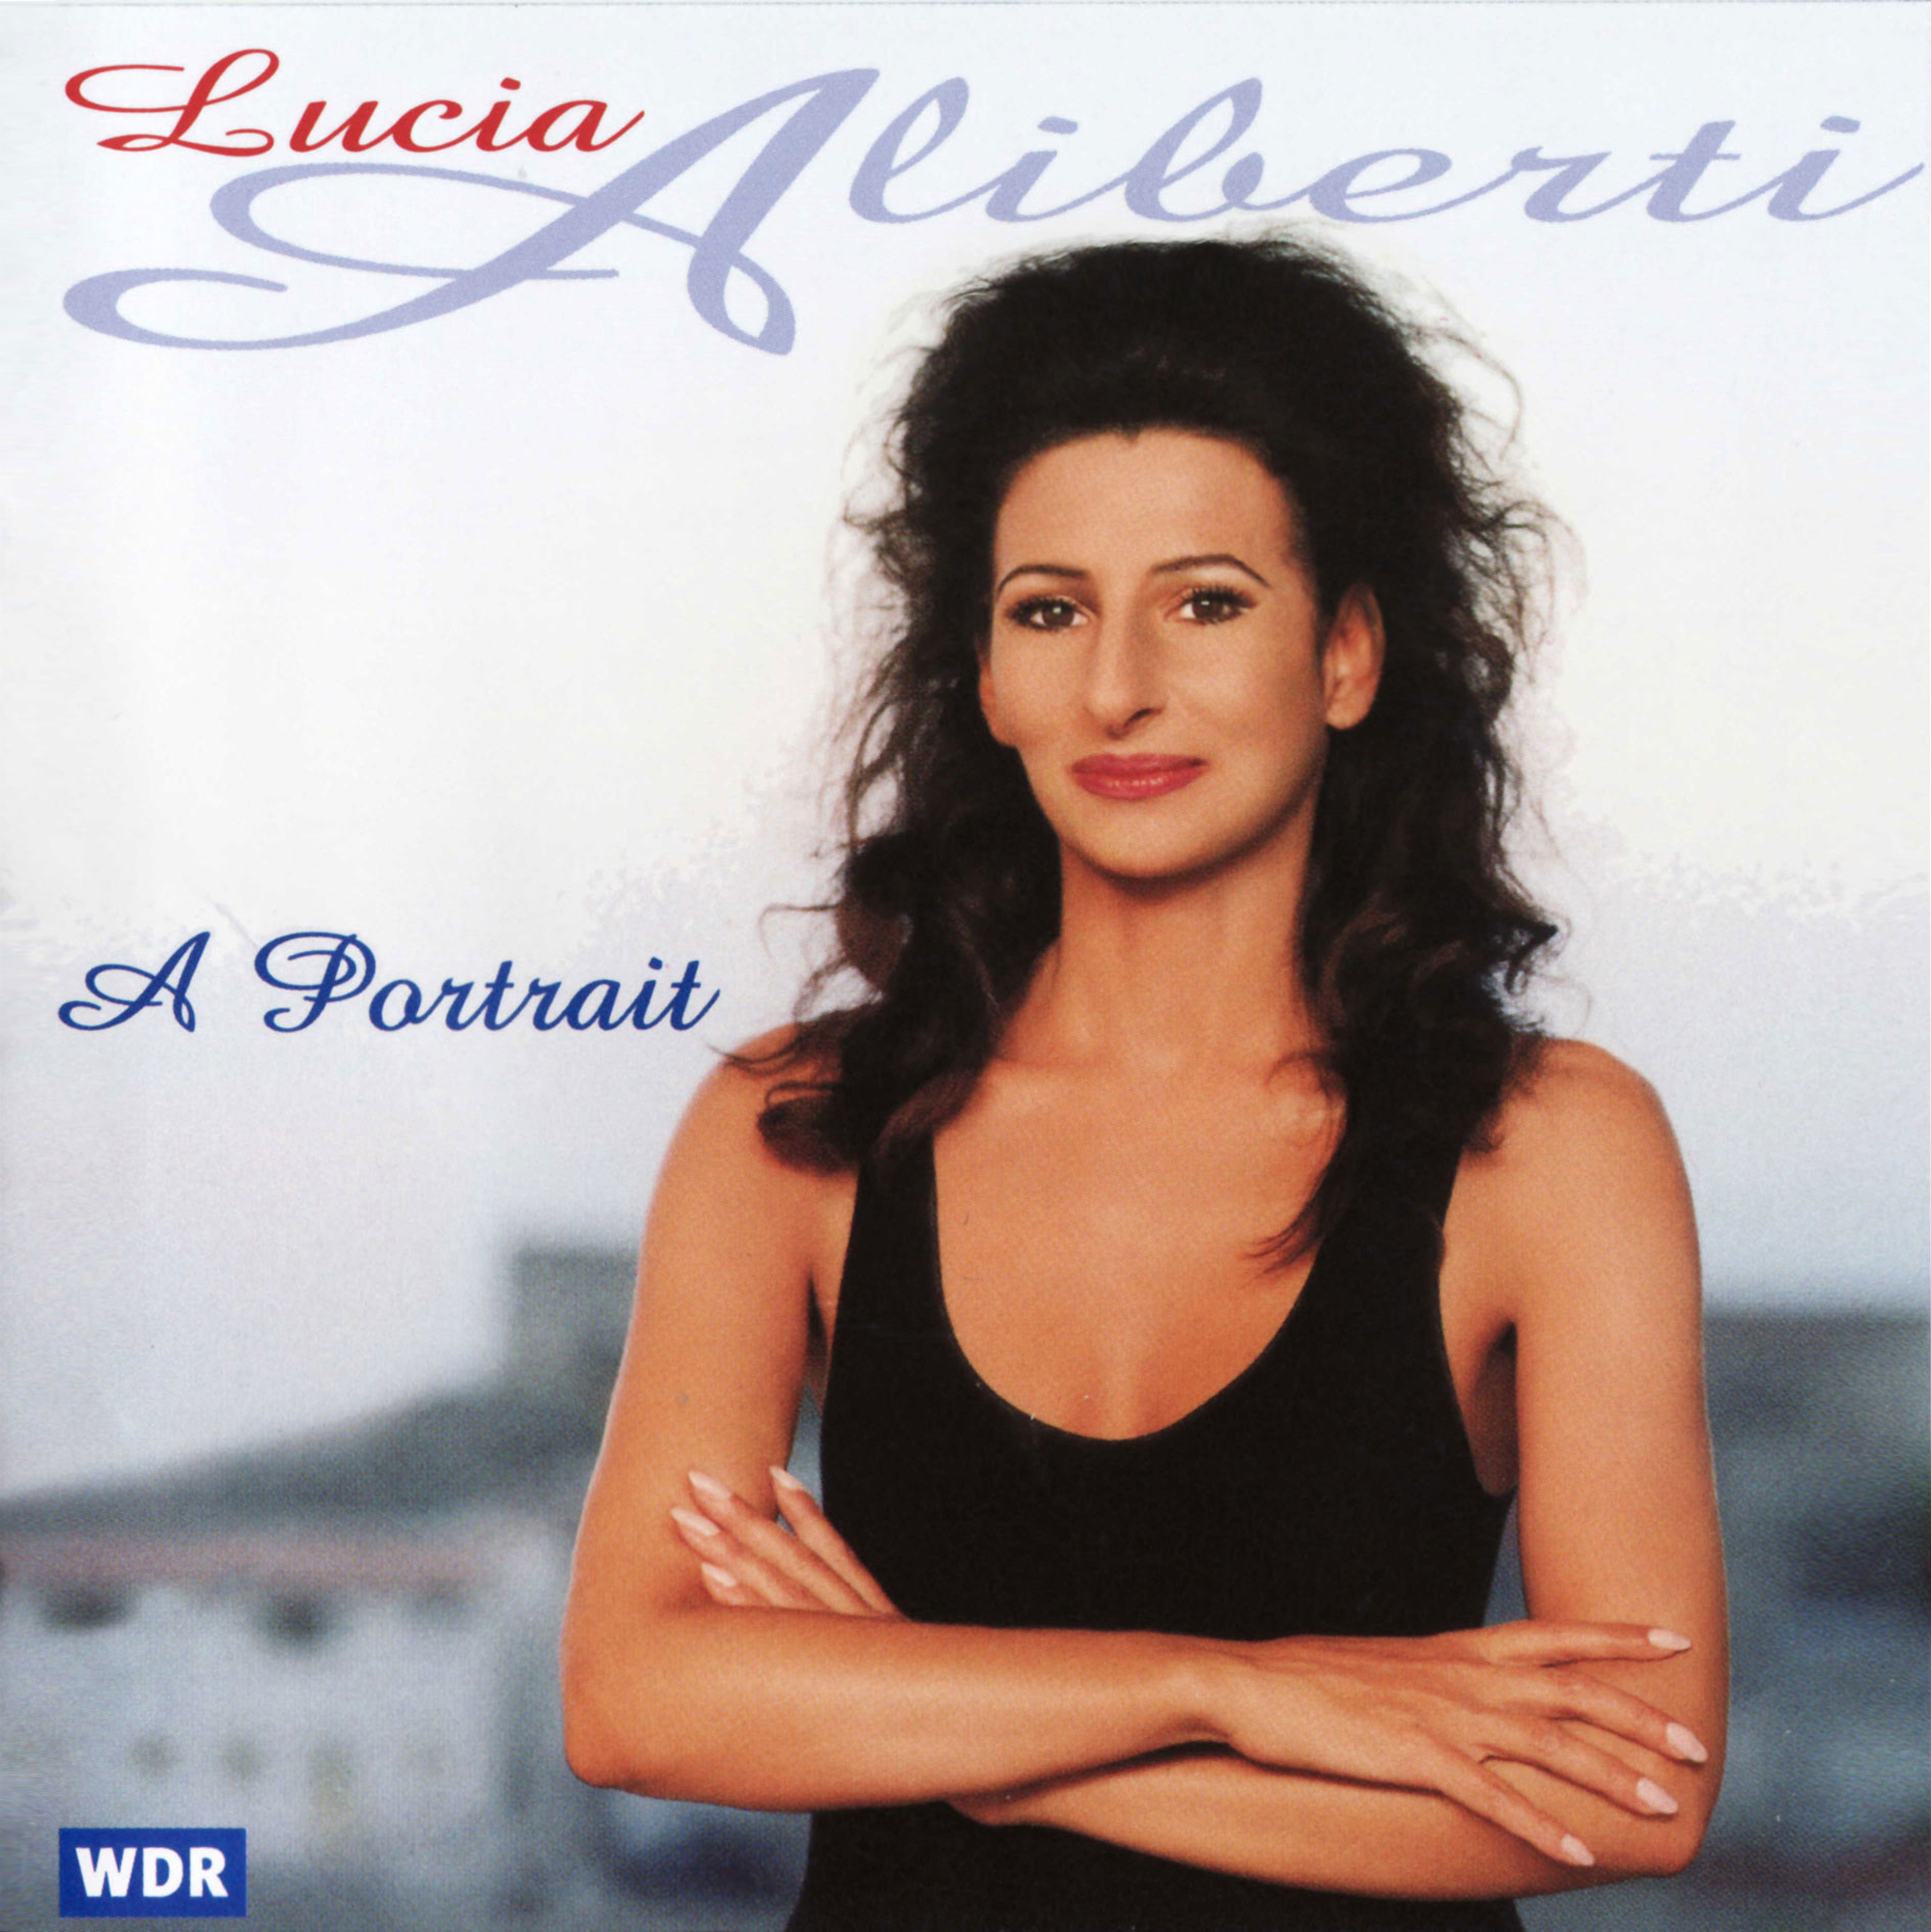 Lucia Aliberti⚘"A Portrait"⚘conductor Peter Feranec⚘Nordwestdeutsche Philharmonie⚘CD Recording⚘RCA BMG Classics⚘:http://www.luciaaliberti.it #luciaaliberti #peterferanec #nordwestdeutschephilharmonie #rcabmgclassics #aportrait